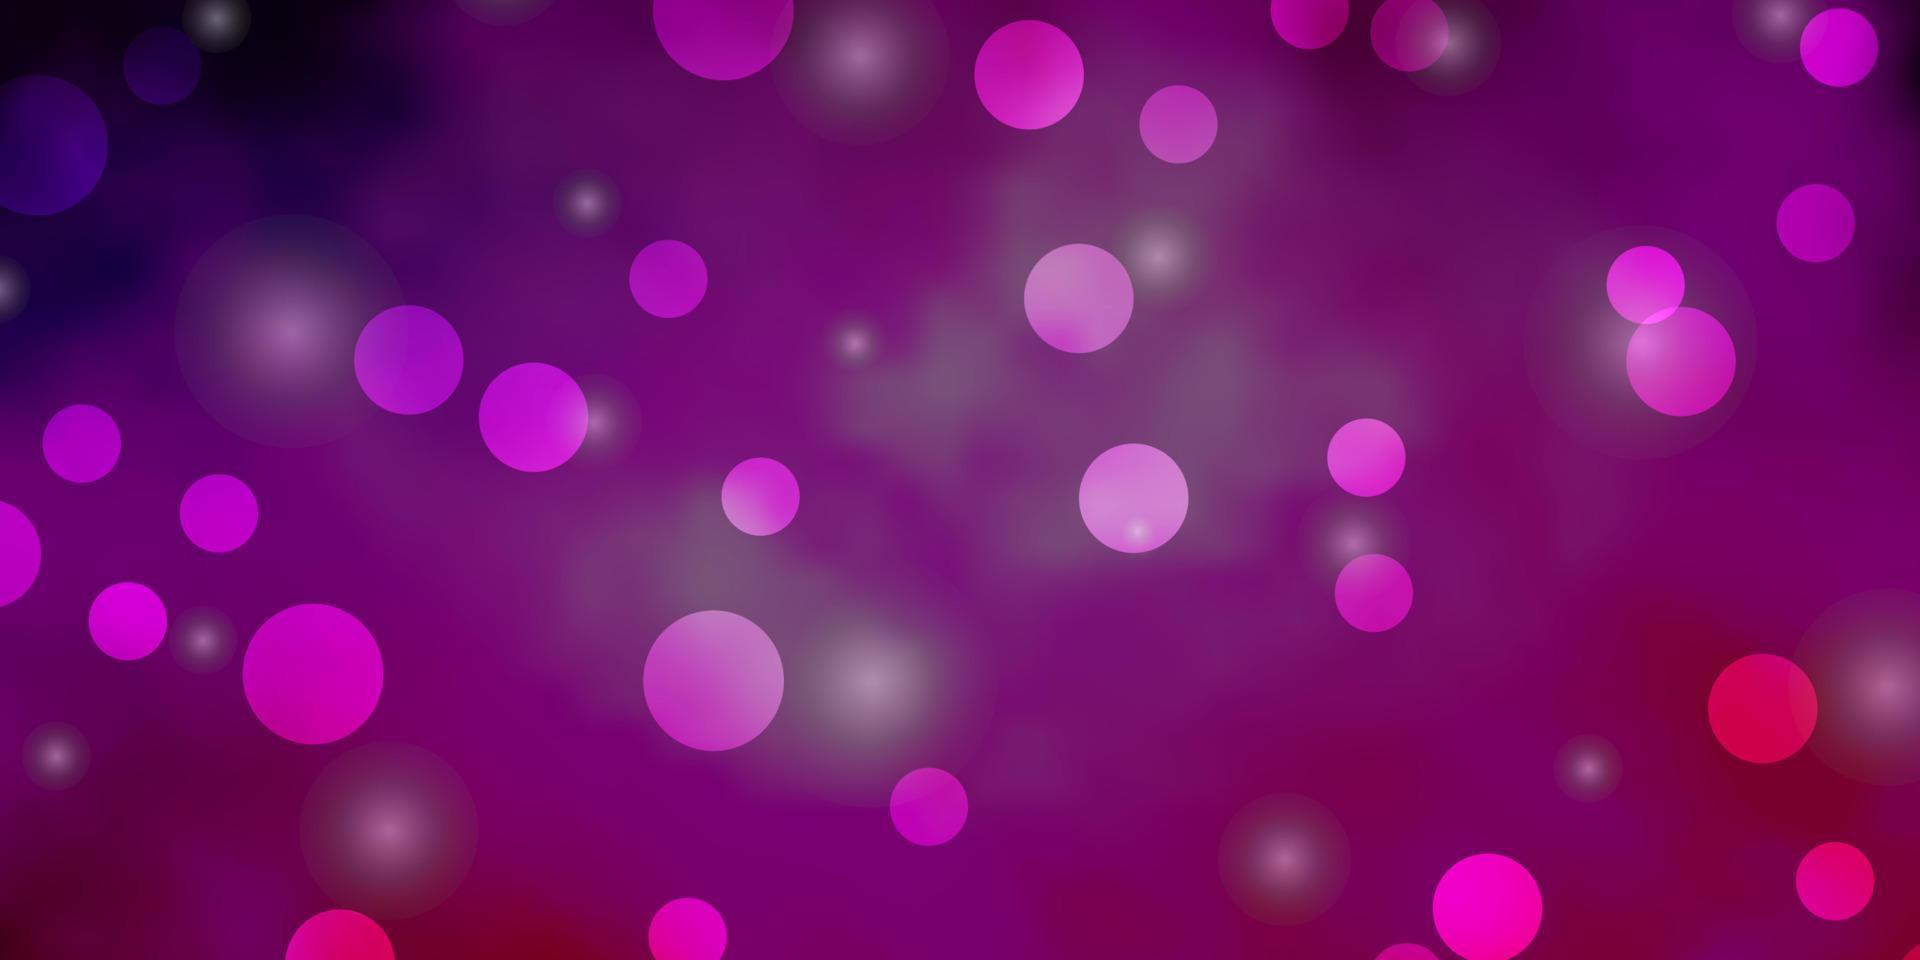 plantilla de vector púrpura claro, rosa con círculos, estrellas.